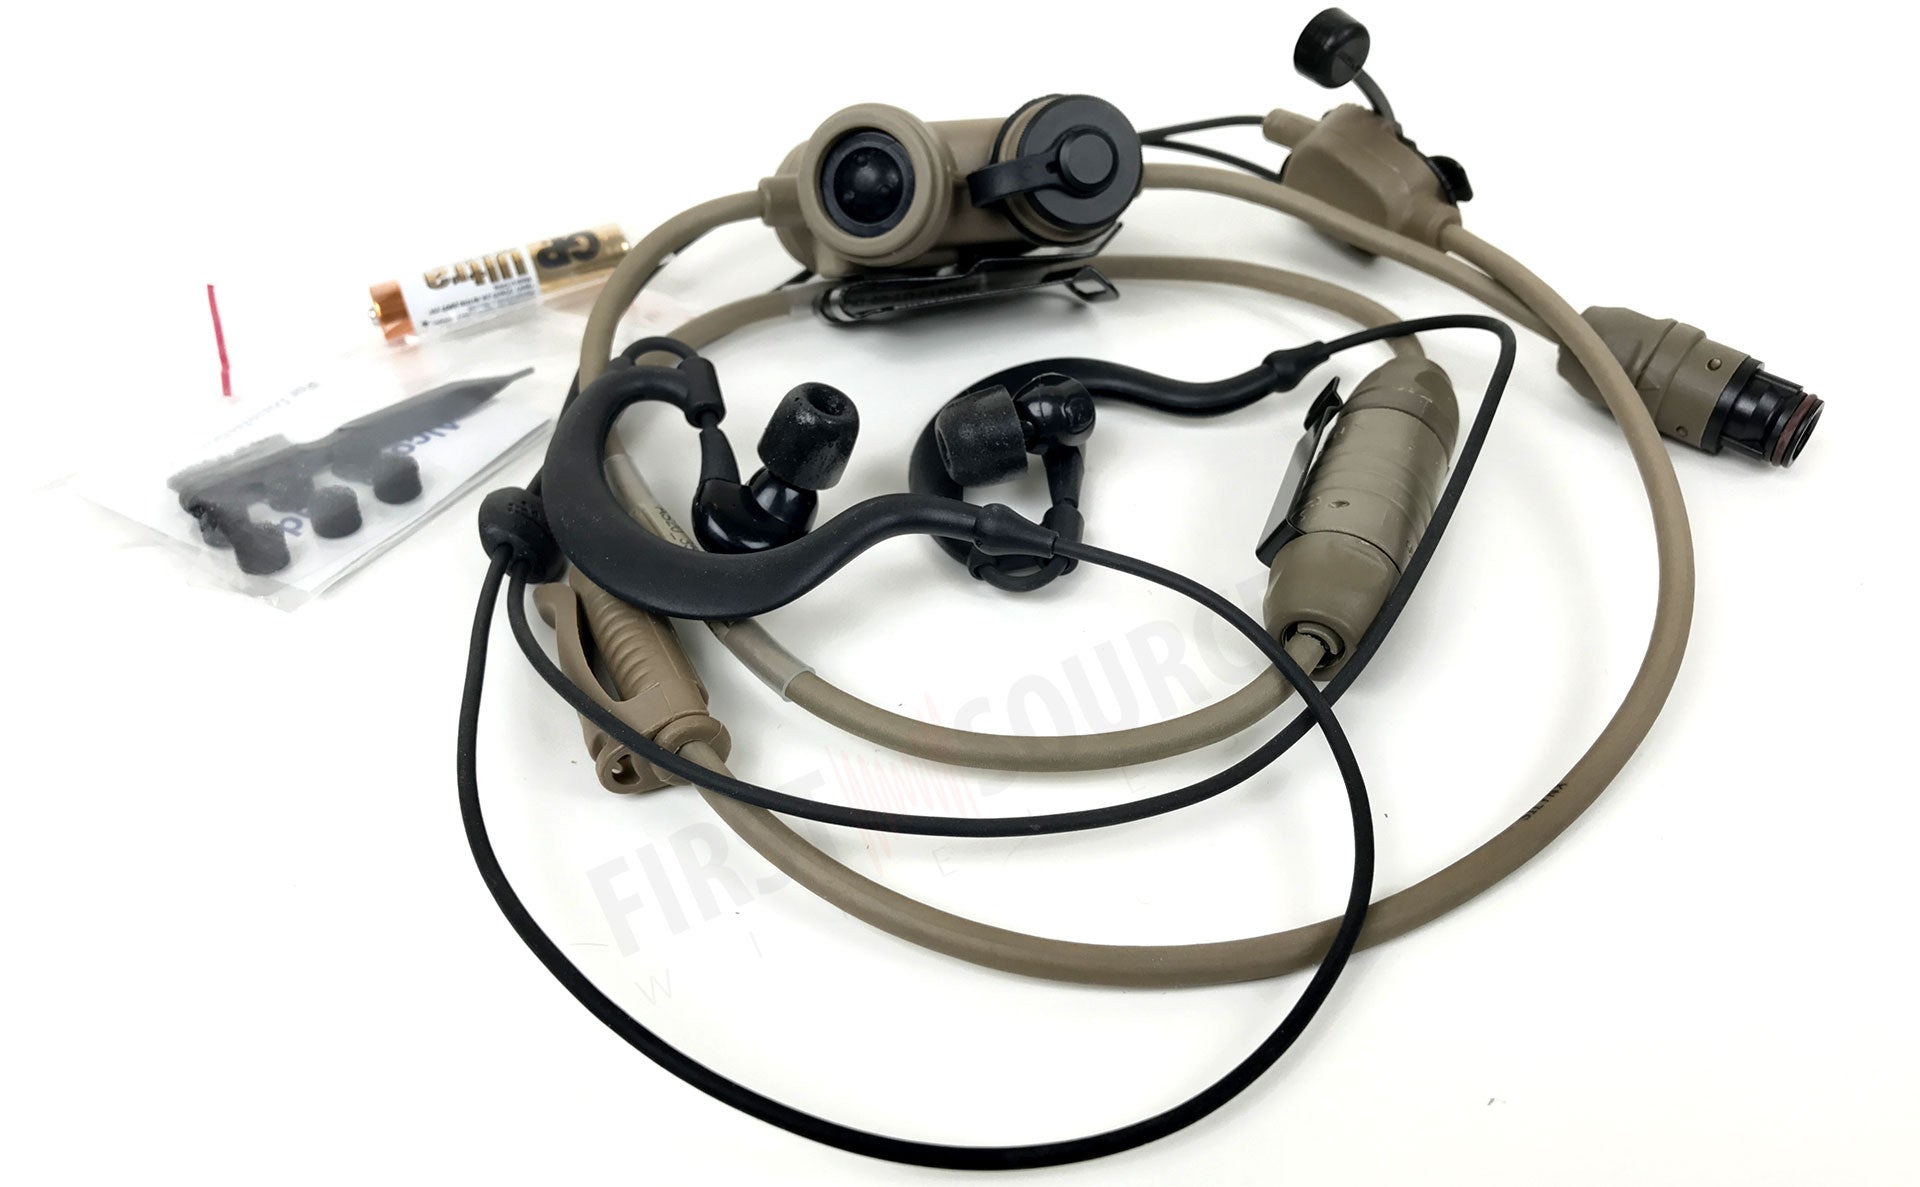 2つのMBITR / PRC 152/117軍事発行無線機で使用するための耳の耳の戦術的な通信のClarus Proヘッドセット、デュアルコミュニケーション